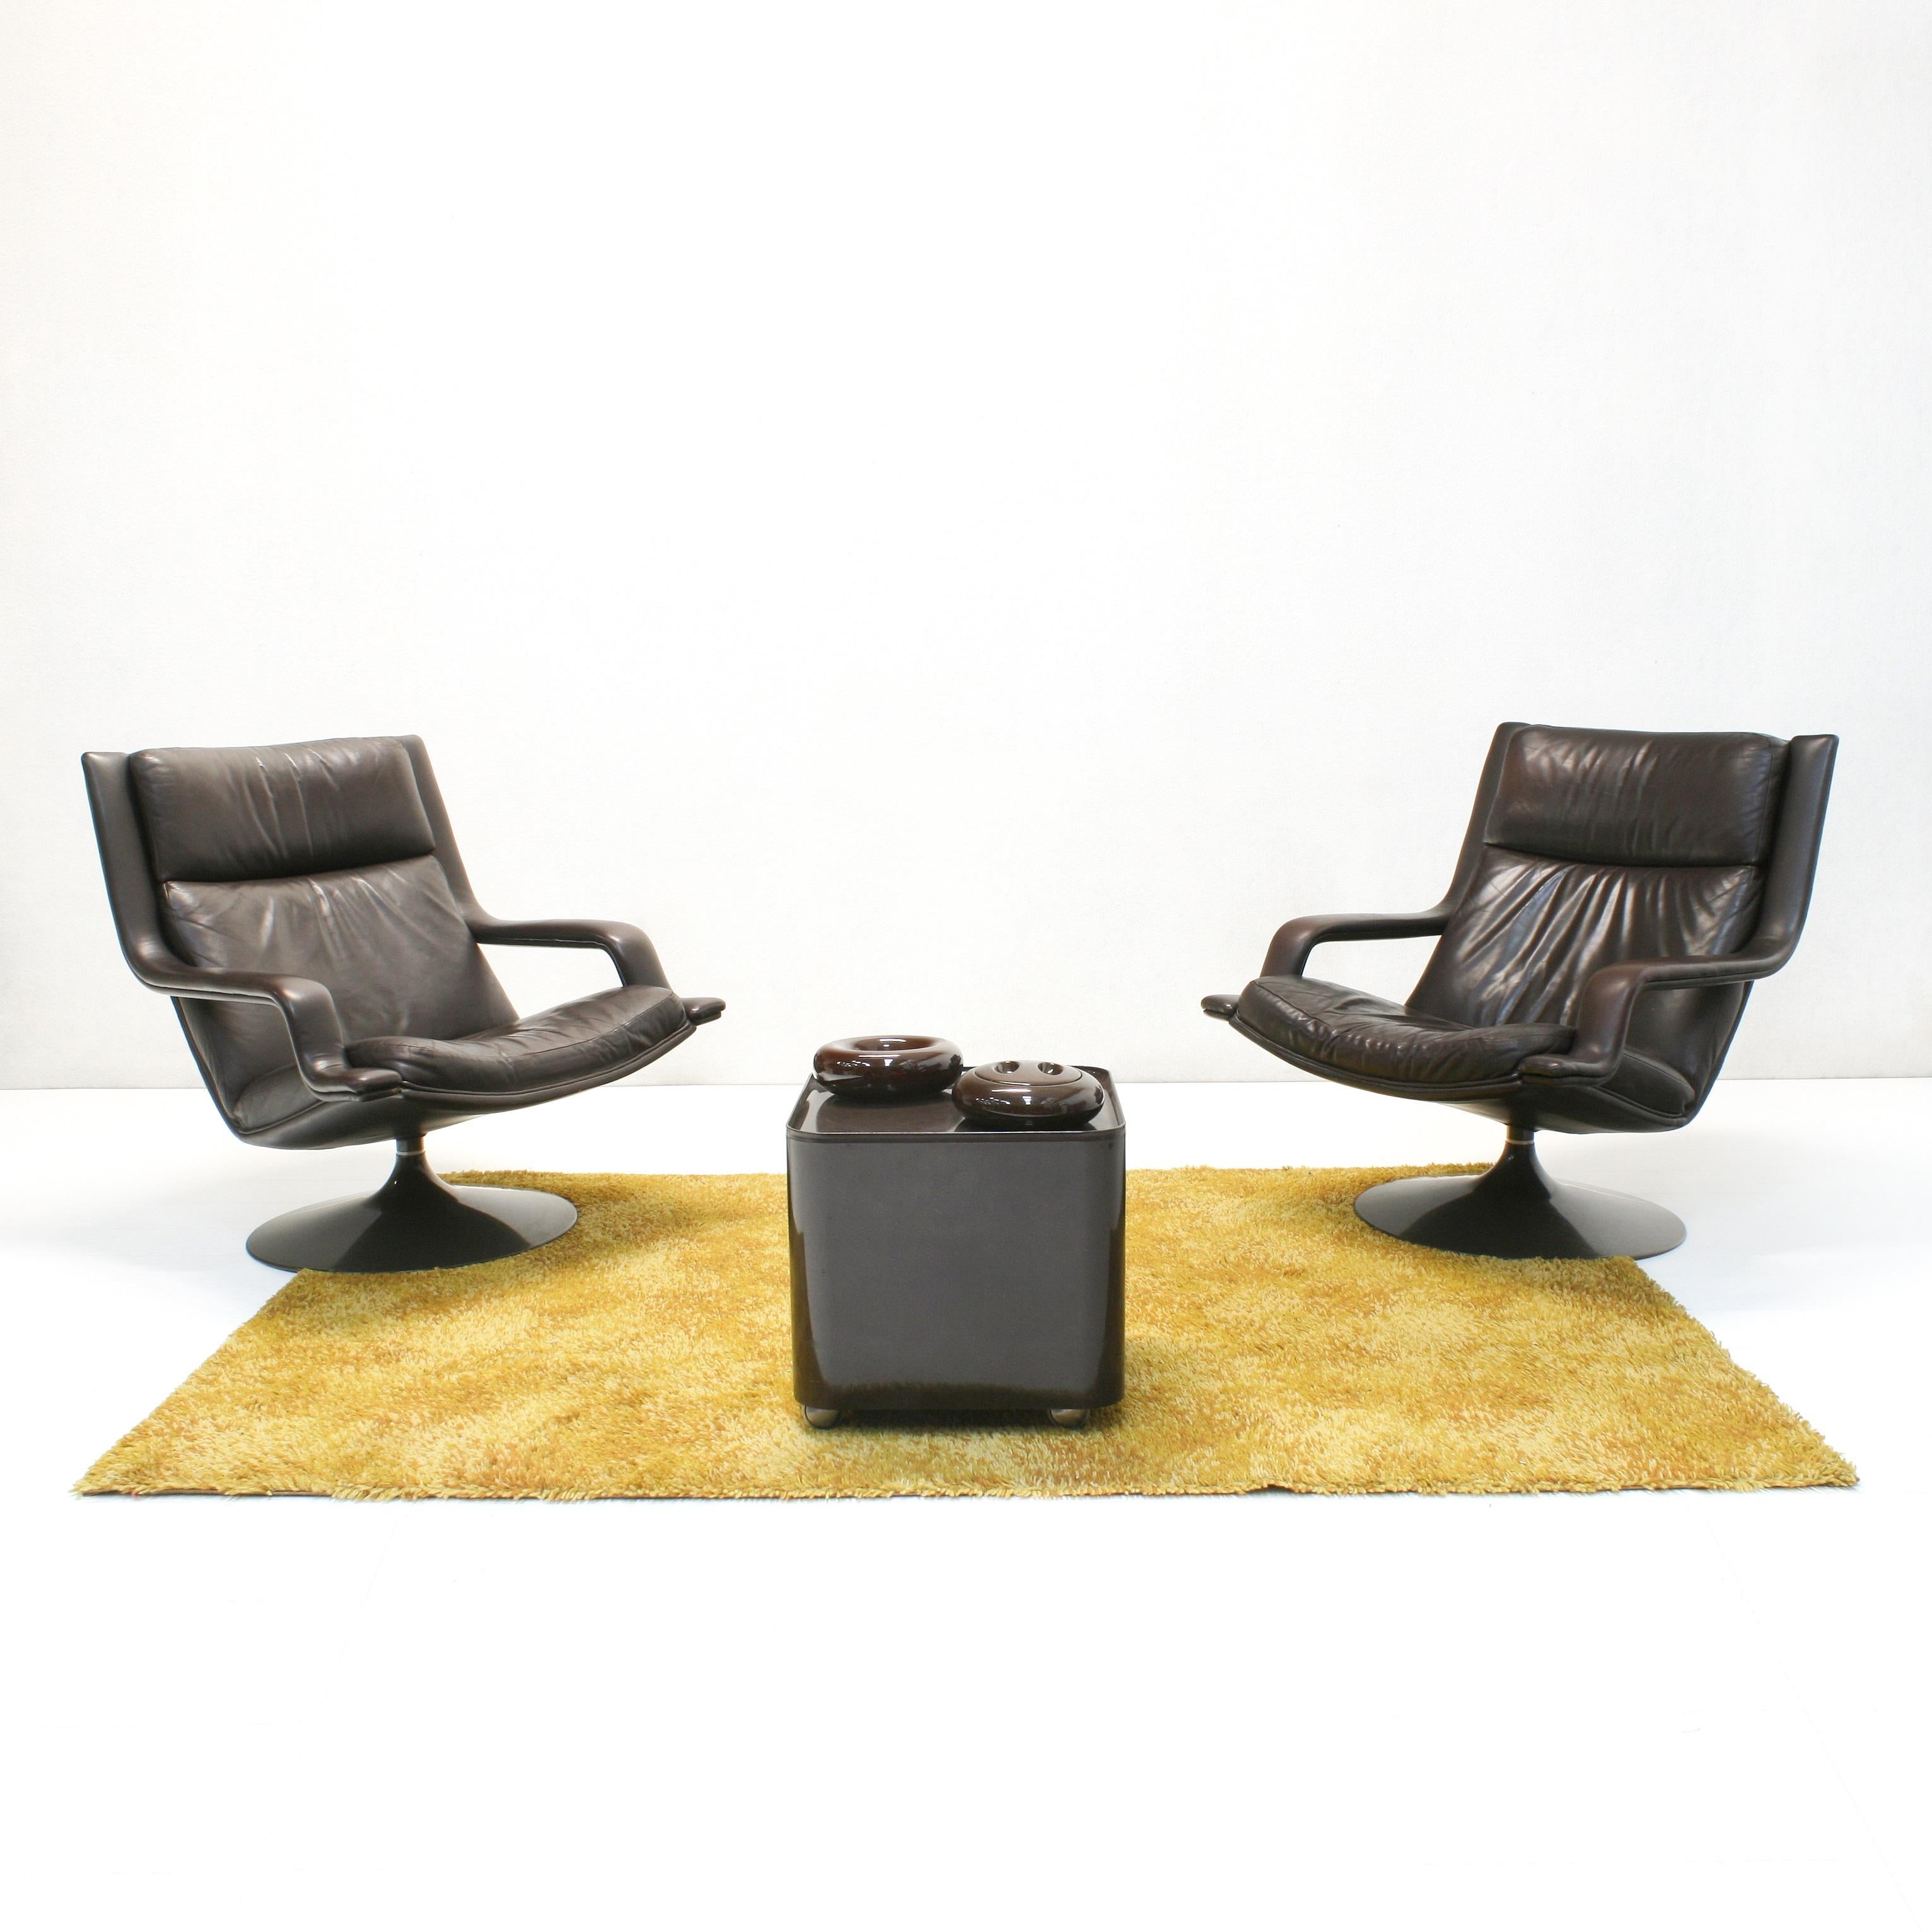 Tolles Loungesessel-Set von Geoffrey David Harcourt, entworfen für Artifort. Diese mit braunem Leder bezogenen Sessel auf einem Drehgestell aus Kunststoff stammen aus den 1970er Jahren und befinden sich in einem guten Vintage-Zustand mit leichter